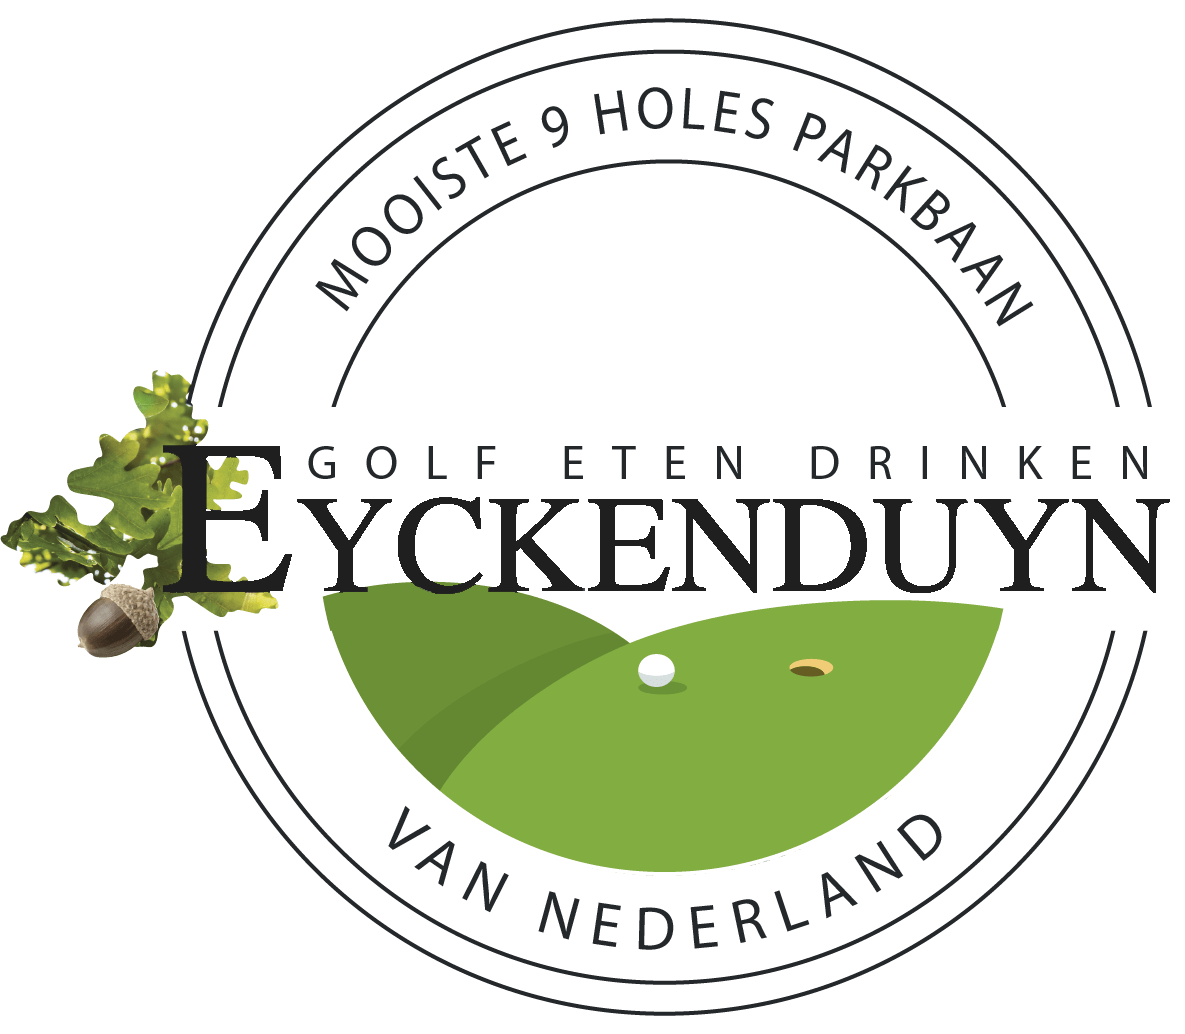 Eyckenduyn - Logo